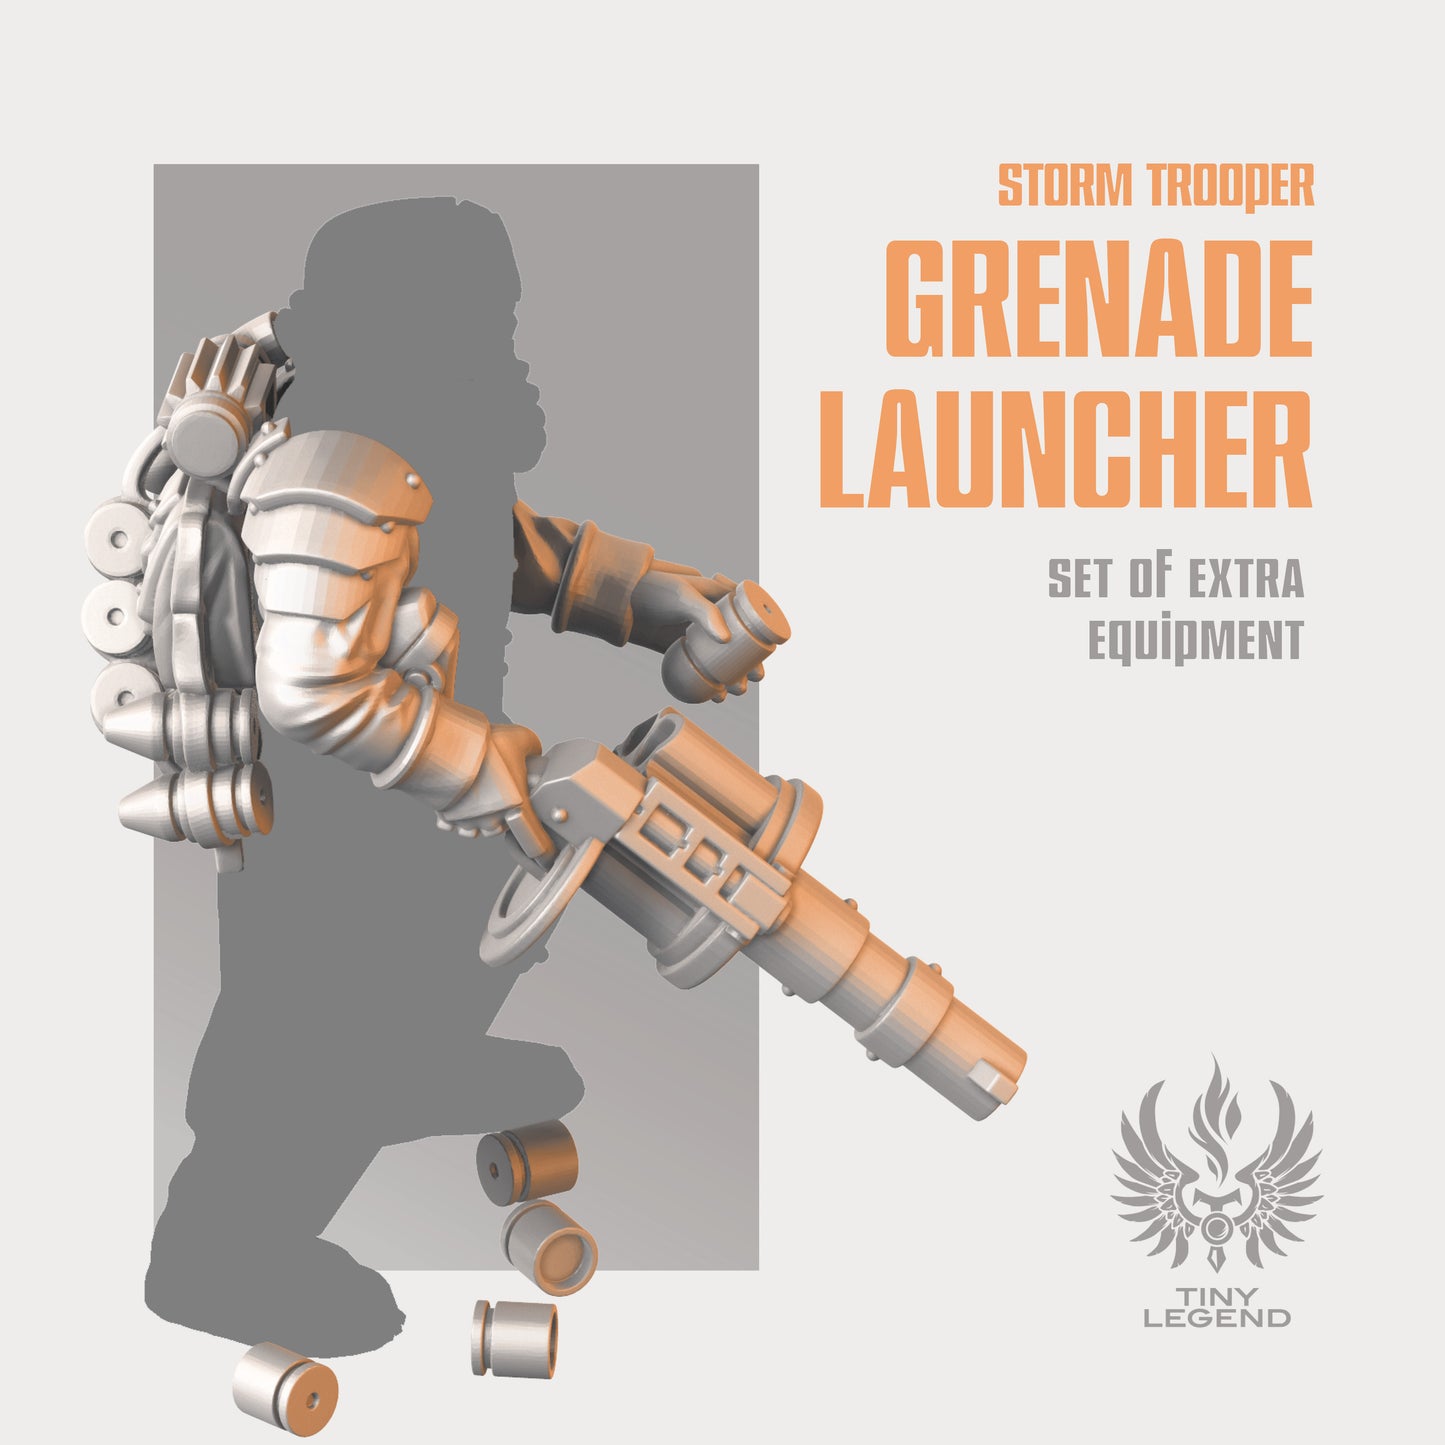 Storm trooper grenade launcher